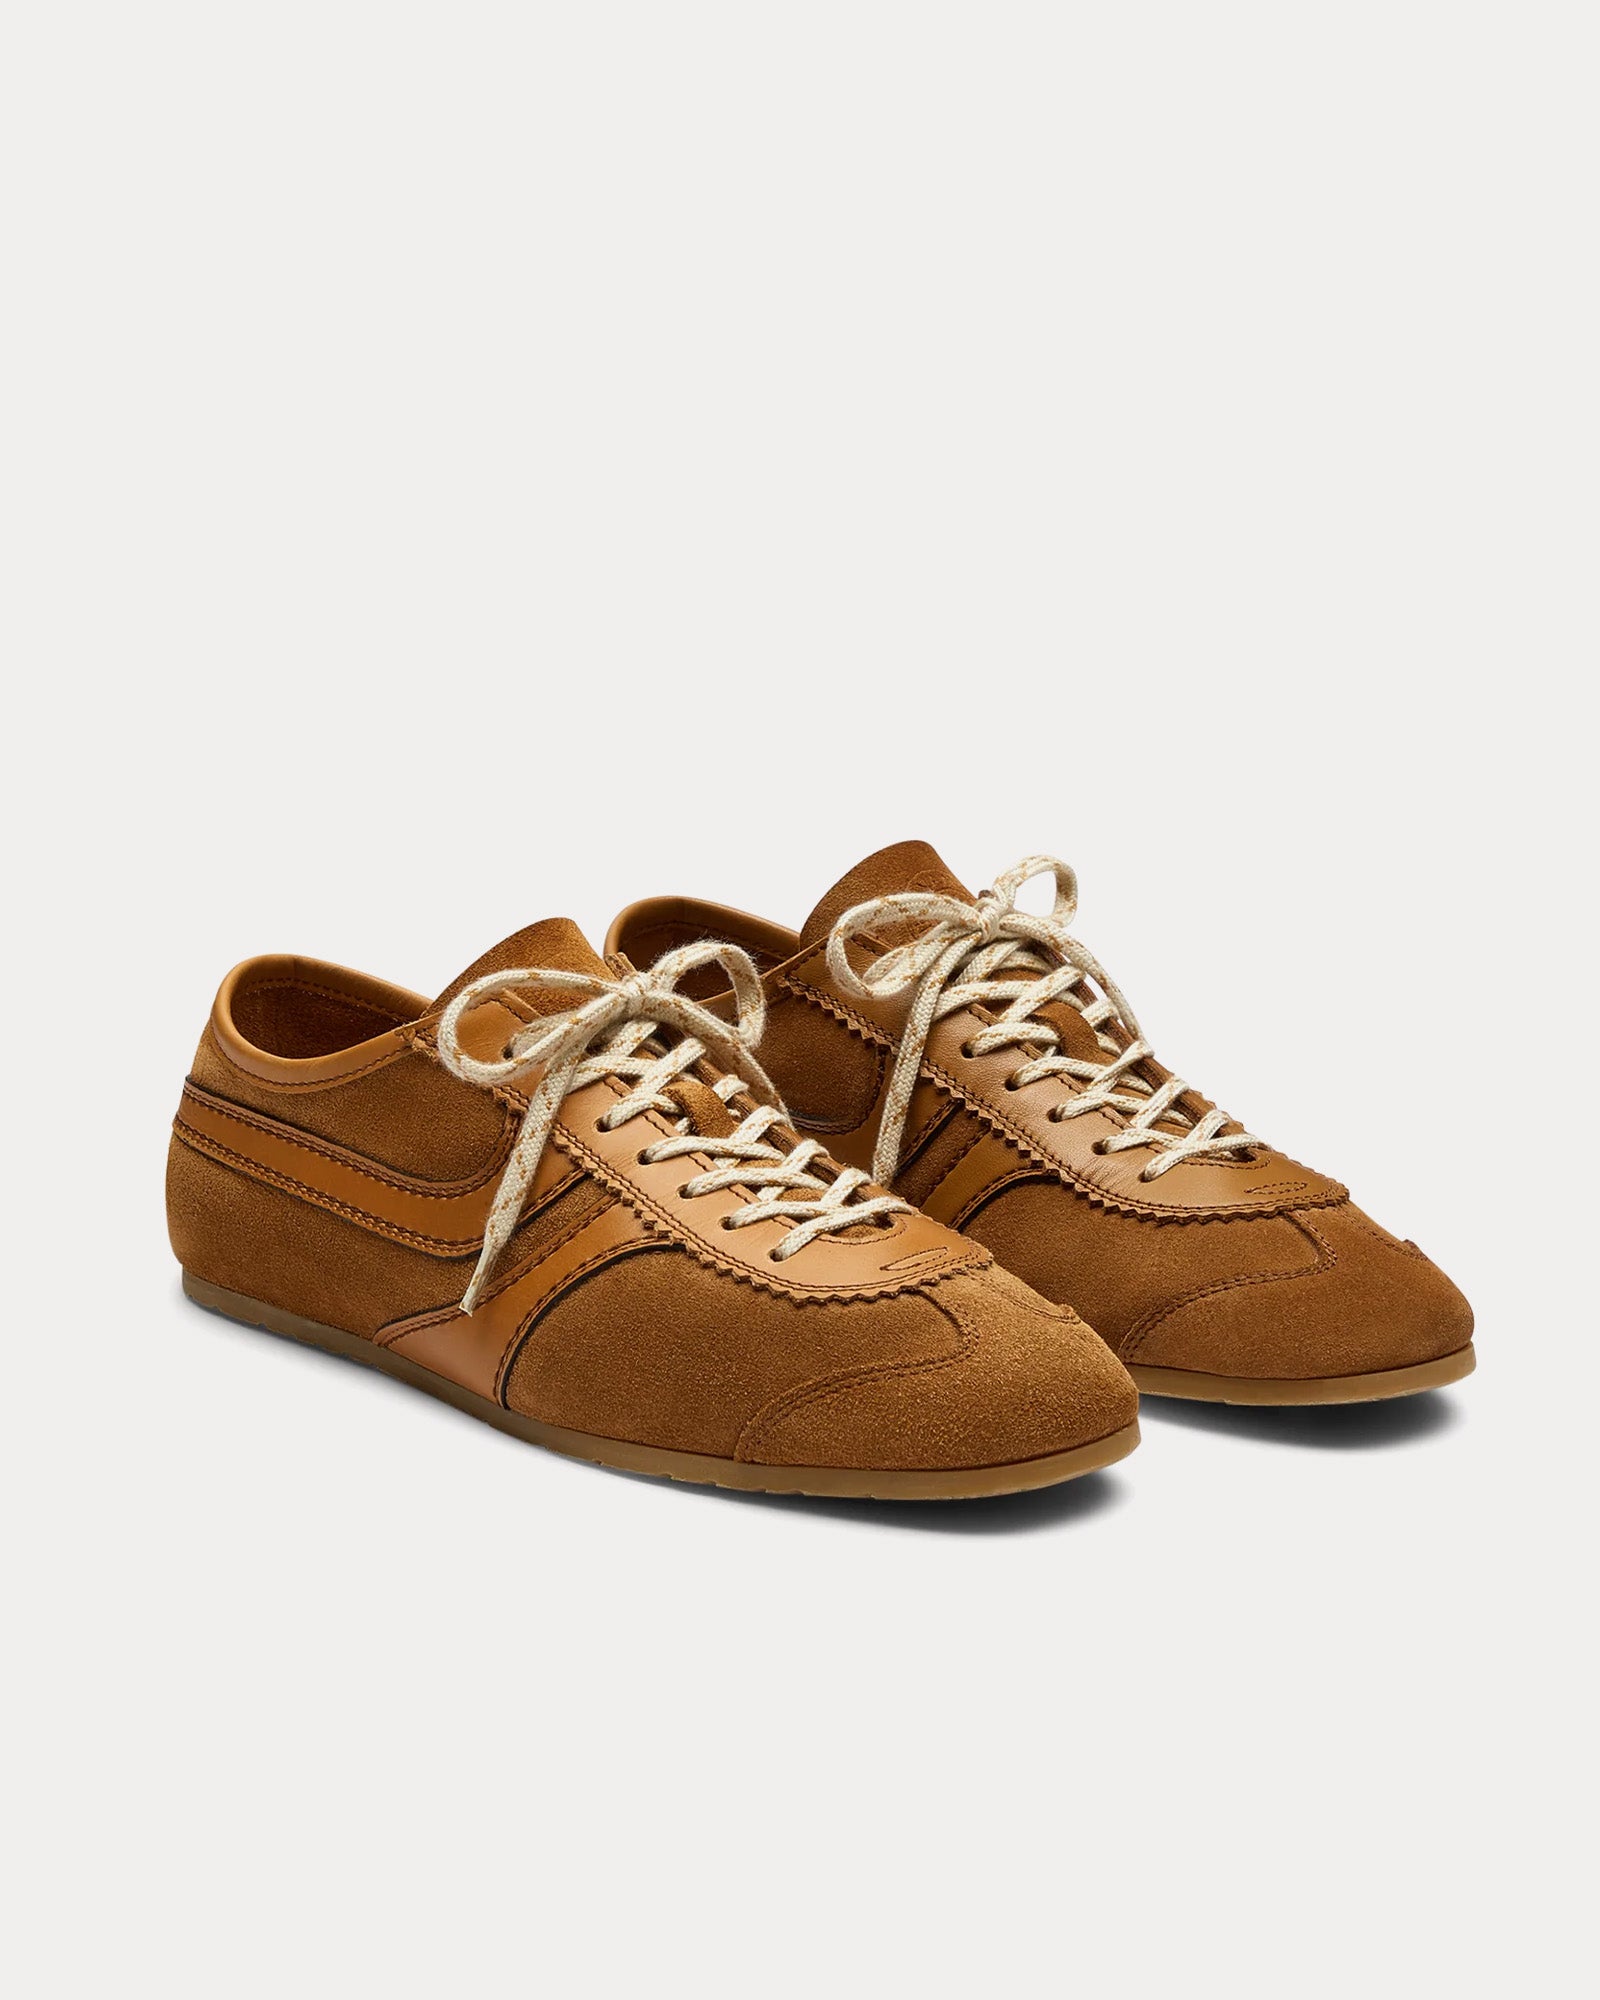 Dries Van Noten - 70's Suede Tan Low Top Sneakers